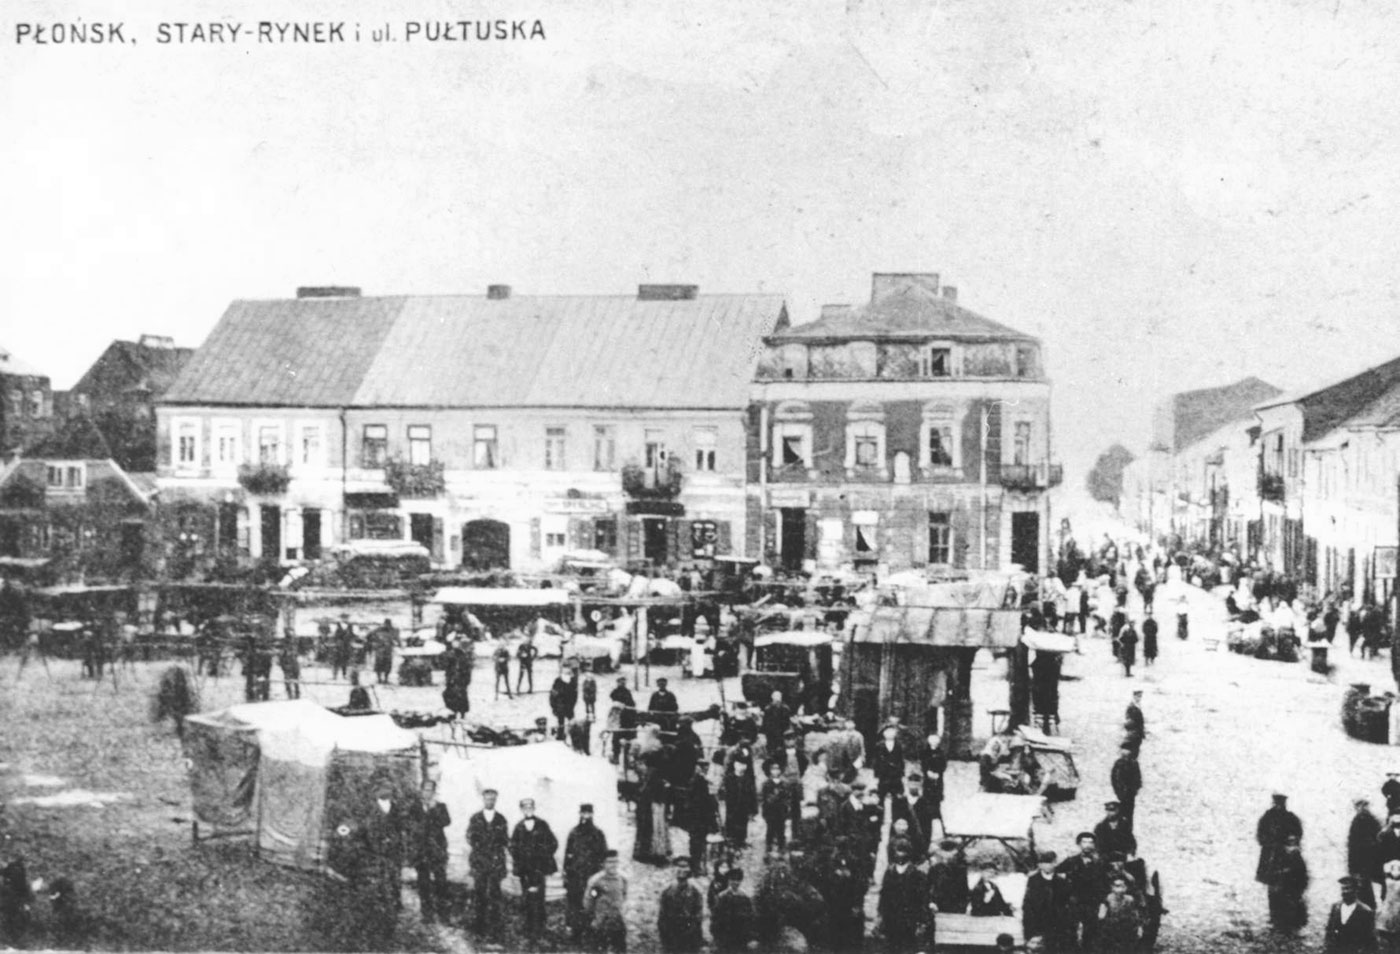 פלונסק, כיכר השוק הישן ברחוב פולטסקר